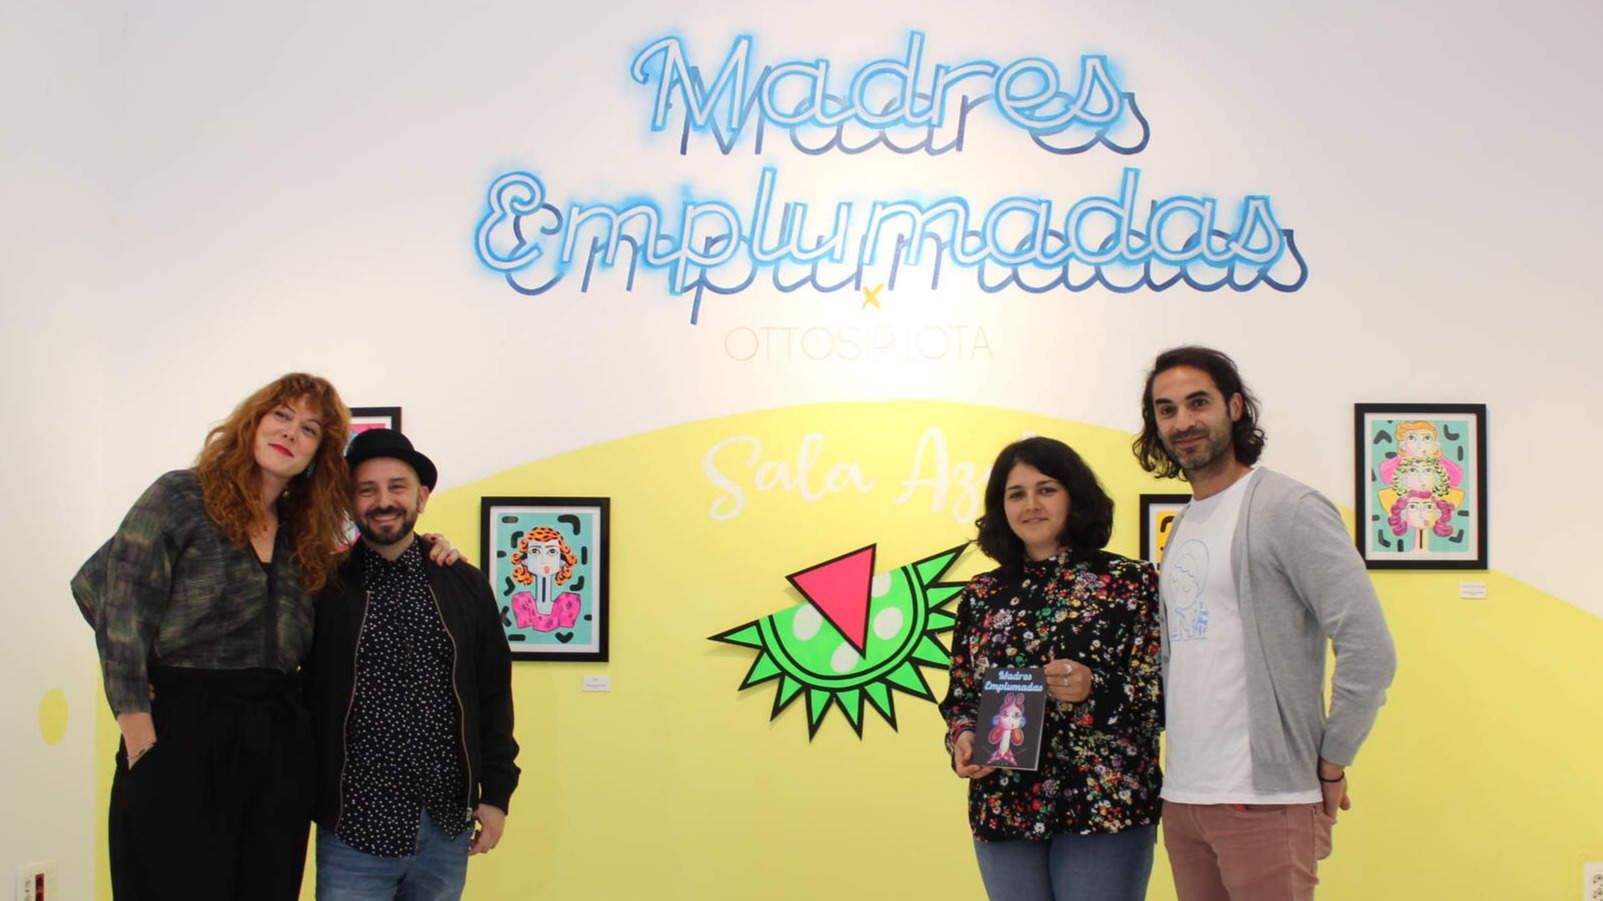  Otto y Luana junto a Mamen Beato y Jorge Torres en la presentación de la exposición "Madres emplumadas". 